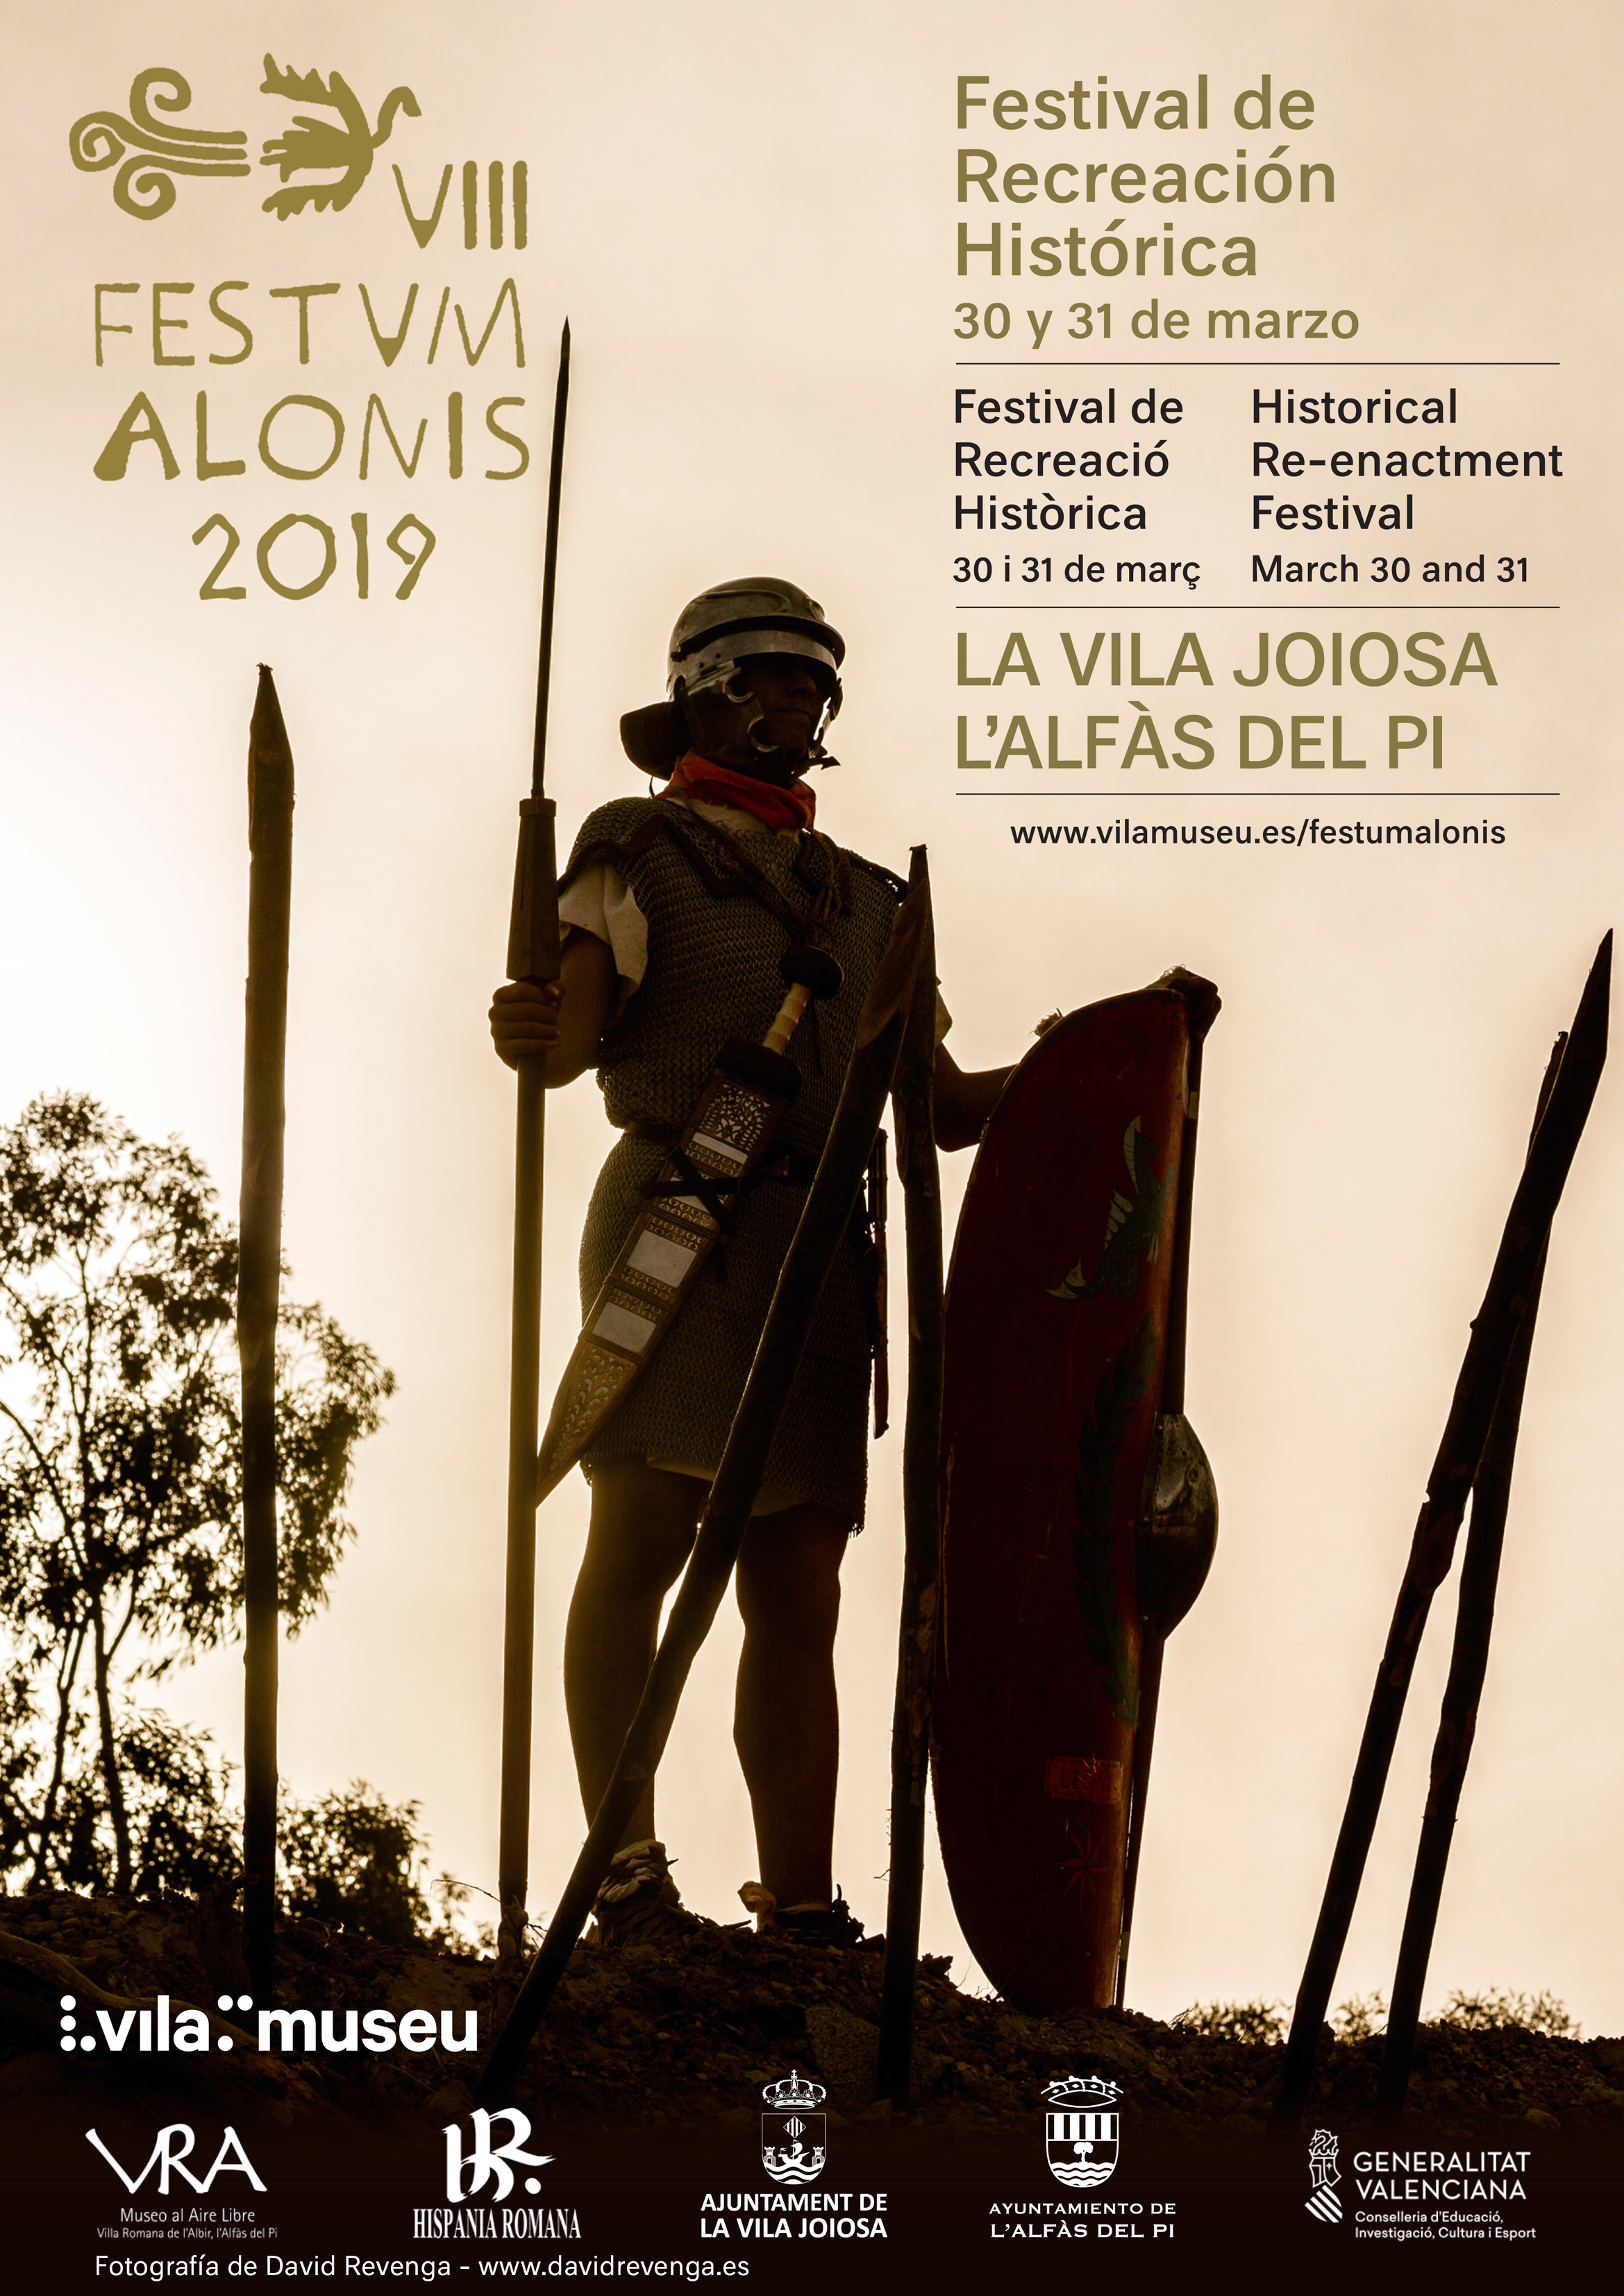 El evento de recreación histórica romana FESTVM ALONIS se celebrará en la Vila y L’ Alfàs del Pi